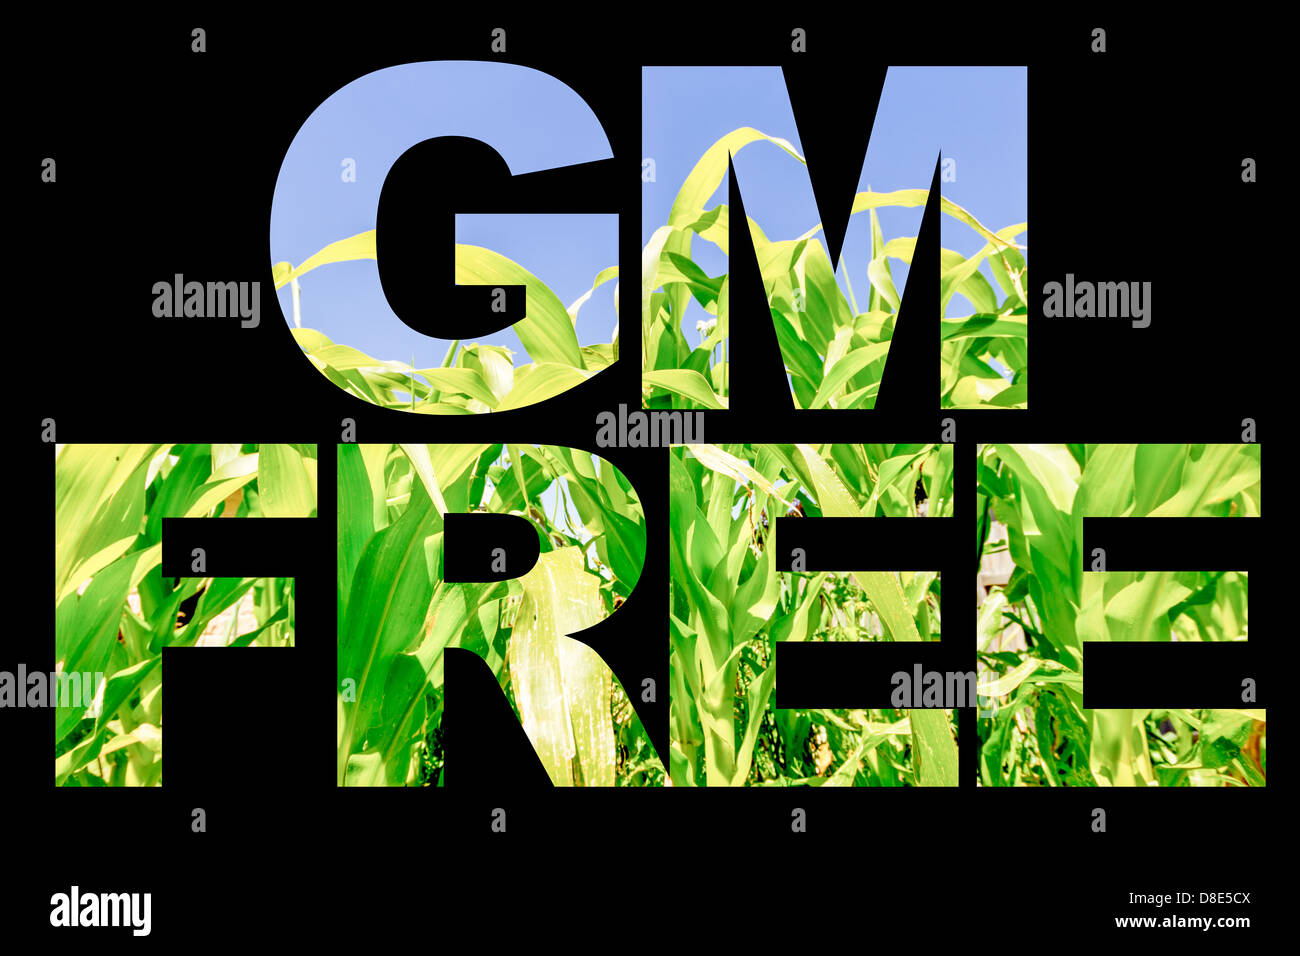 Immagine in testo isolato sul nero. GM Free food concept. Foto Stock